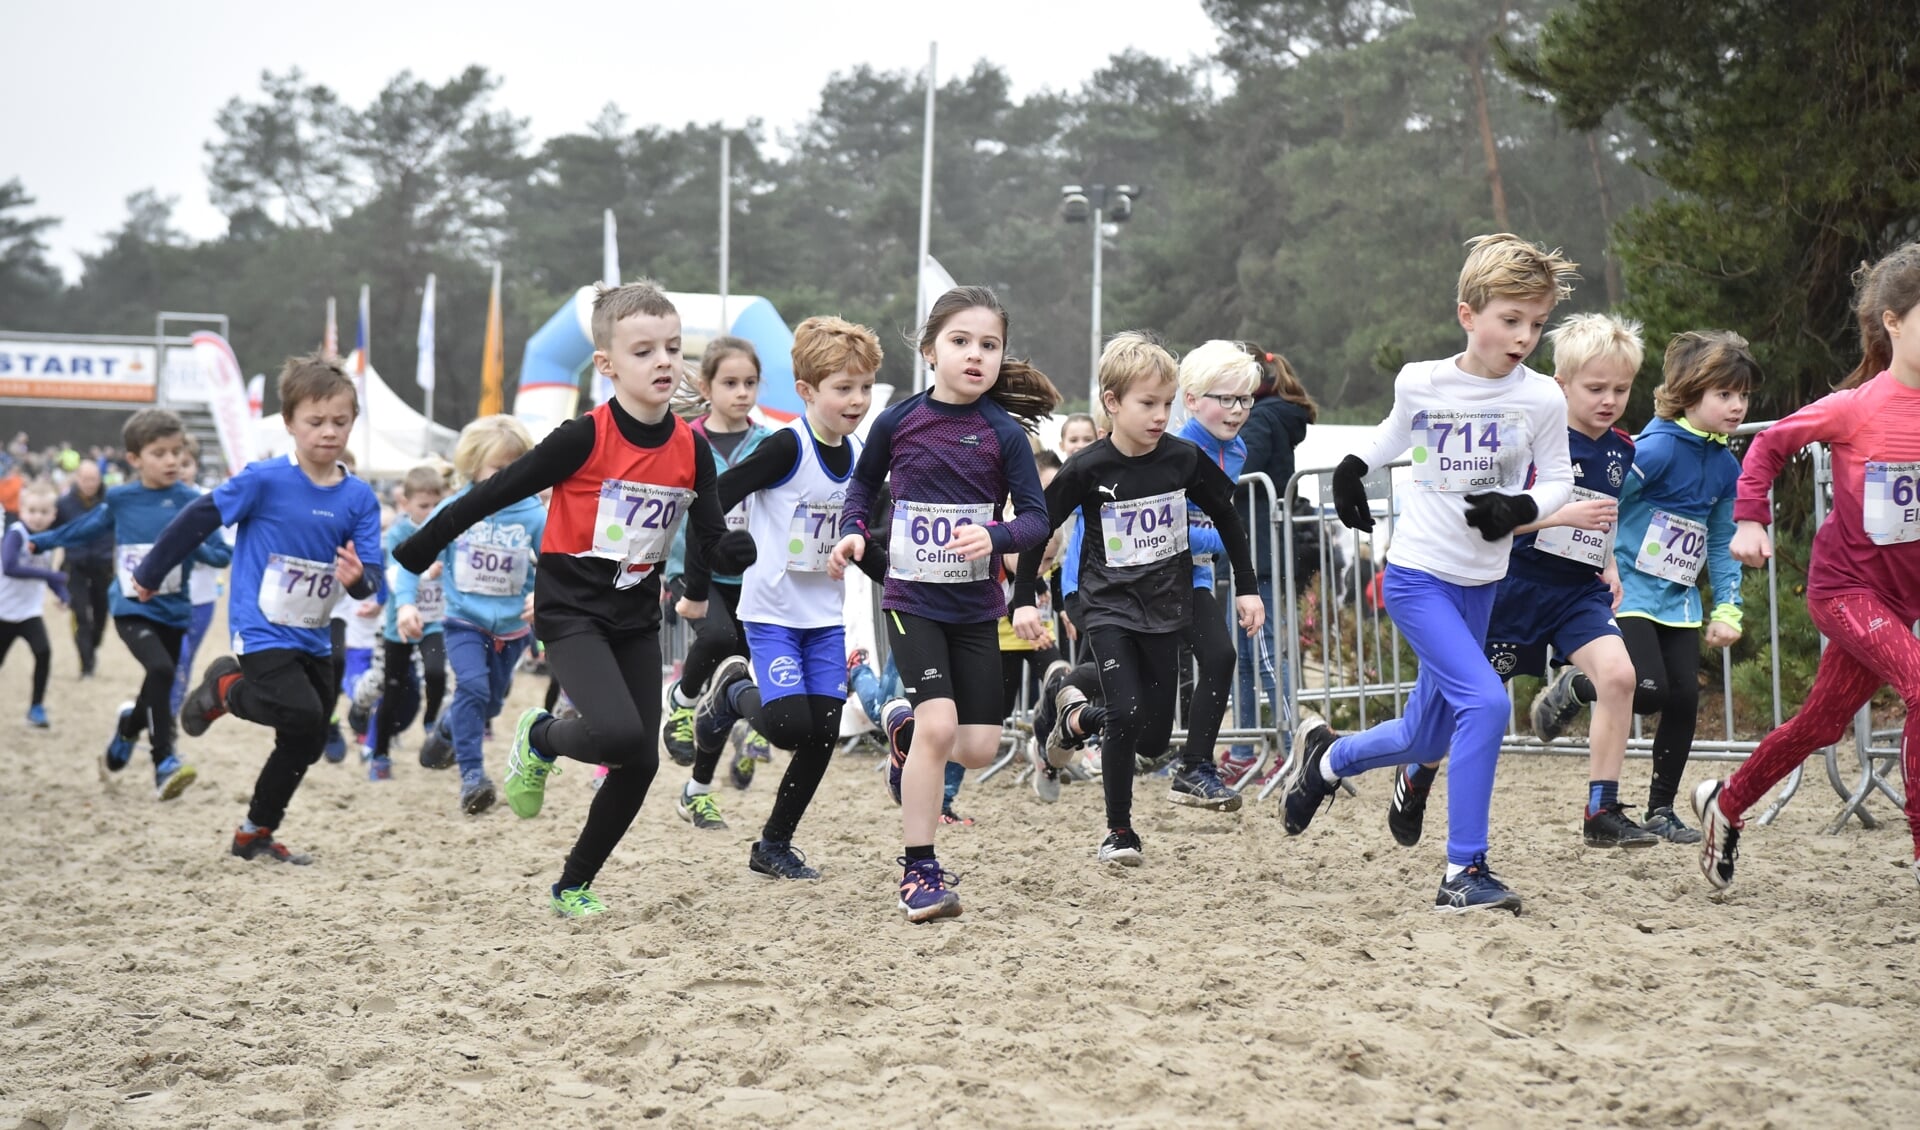 Duizenden deelnemers, van jong tot oud, zetten het op 31 december op een rennen. Het startschot zal die dag vaak klinken.